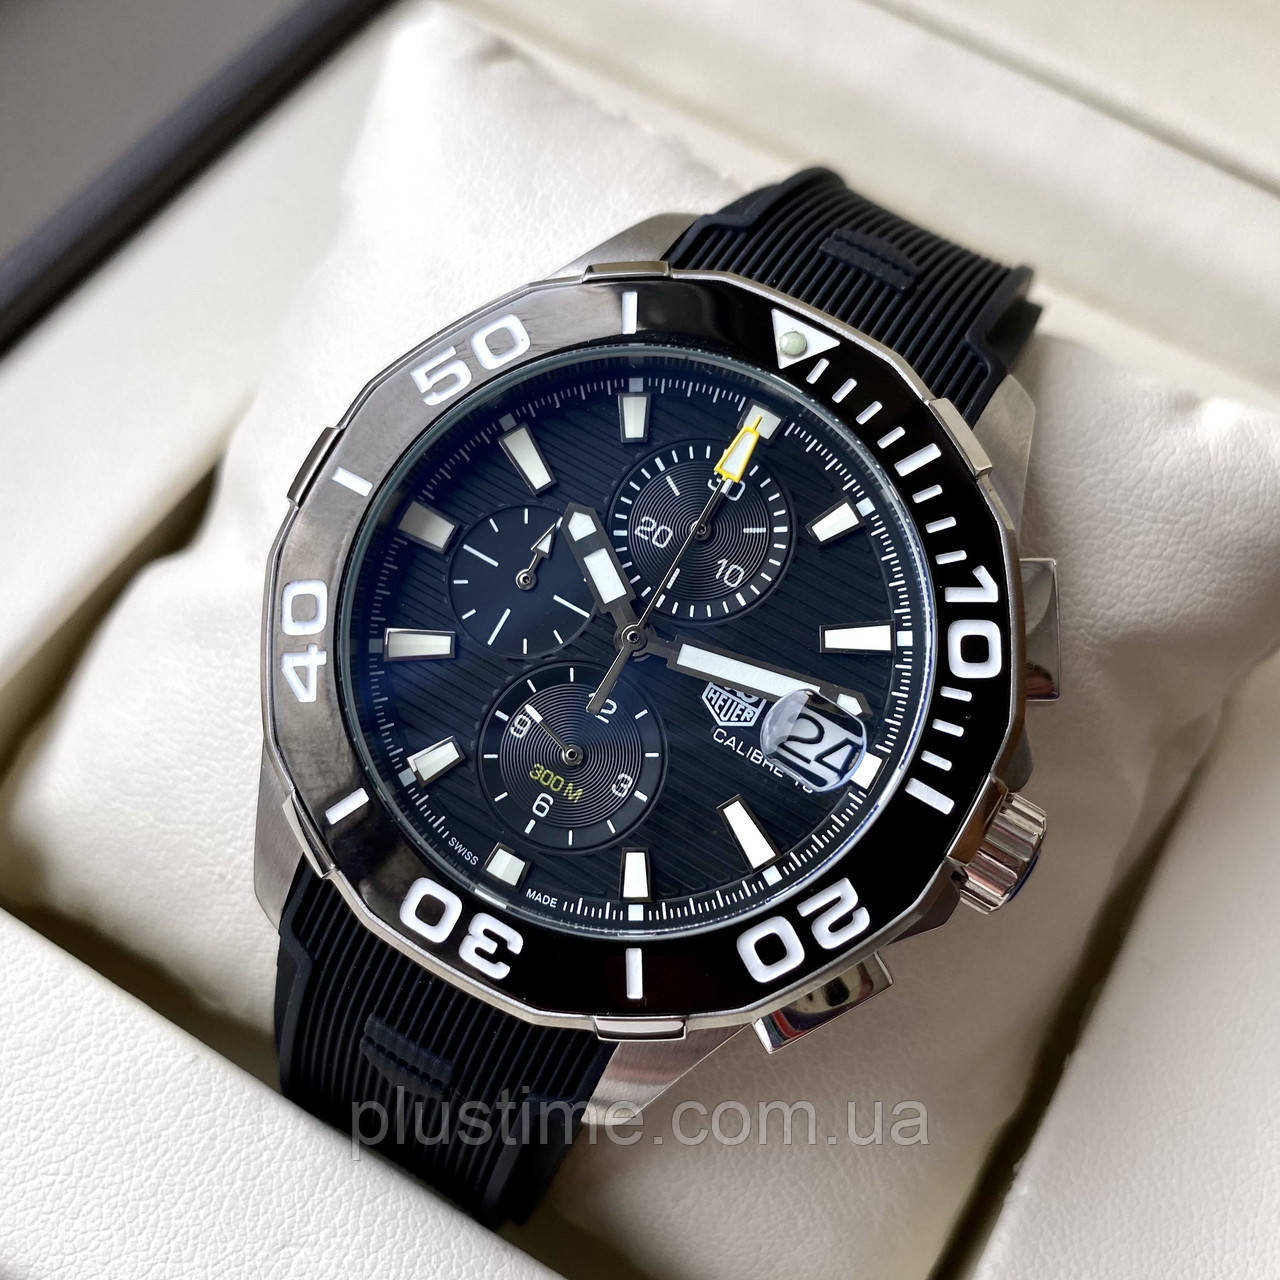 Чоловічий годинник Tag Heuer Aquaracer Calibre 16 Black Chronograph наручний кварцовий на каучуковому ремінці